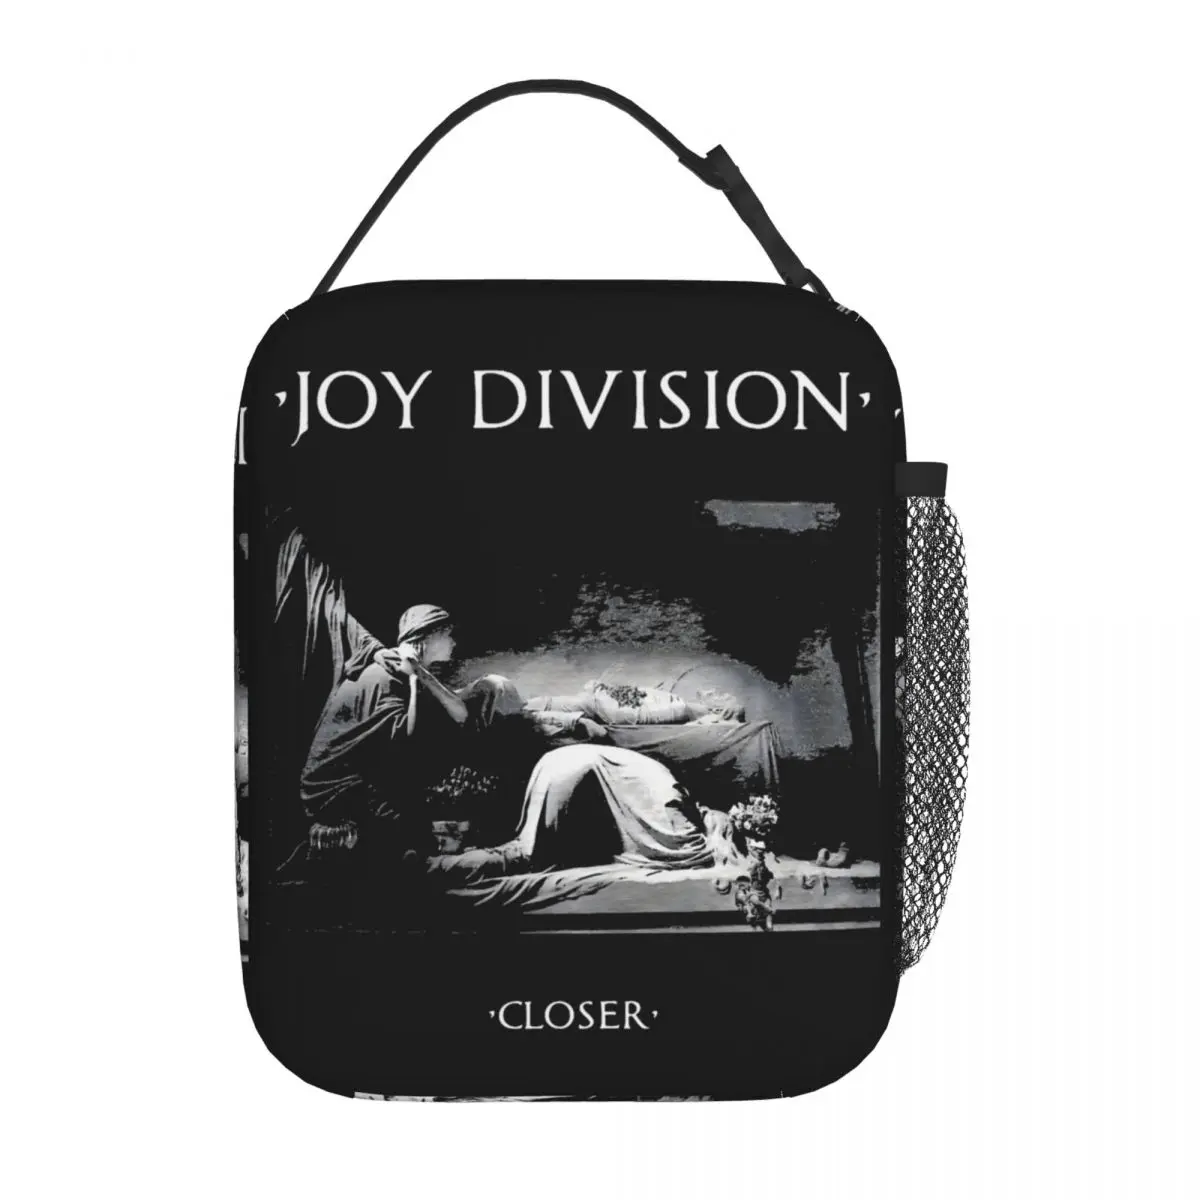 Joy Division Любовь разорвет нас на части Изолированная сумка для ланча Контейнер для обеда Сумка-холодильник Сумка-тоут Ланч-бокс Офис Путешествия Мужчины Женщины